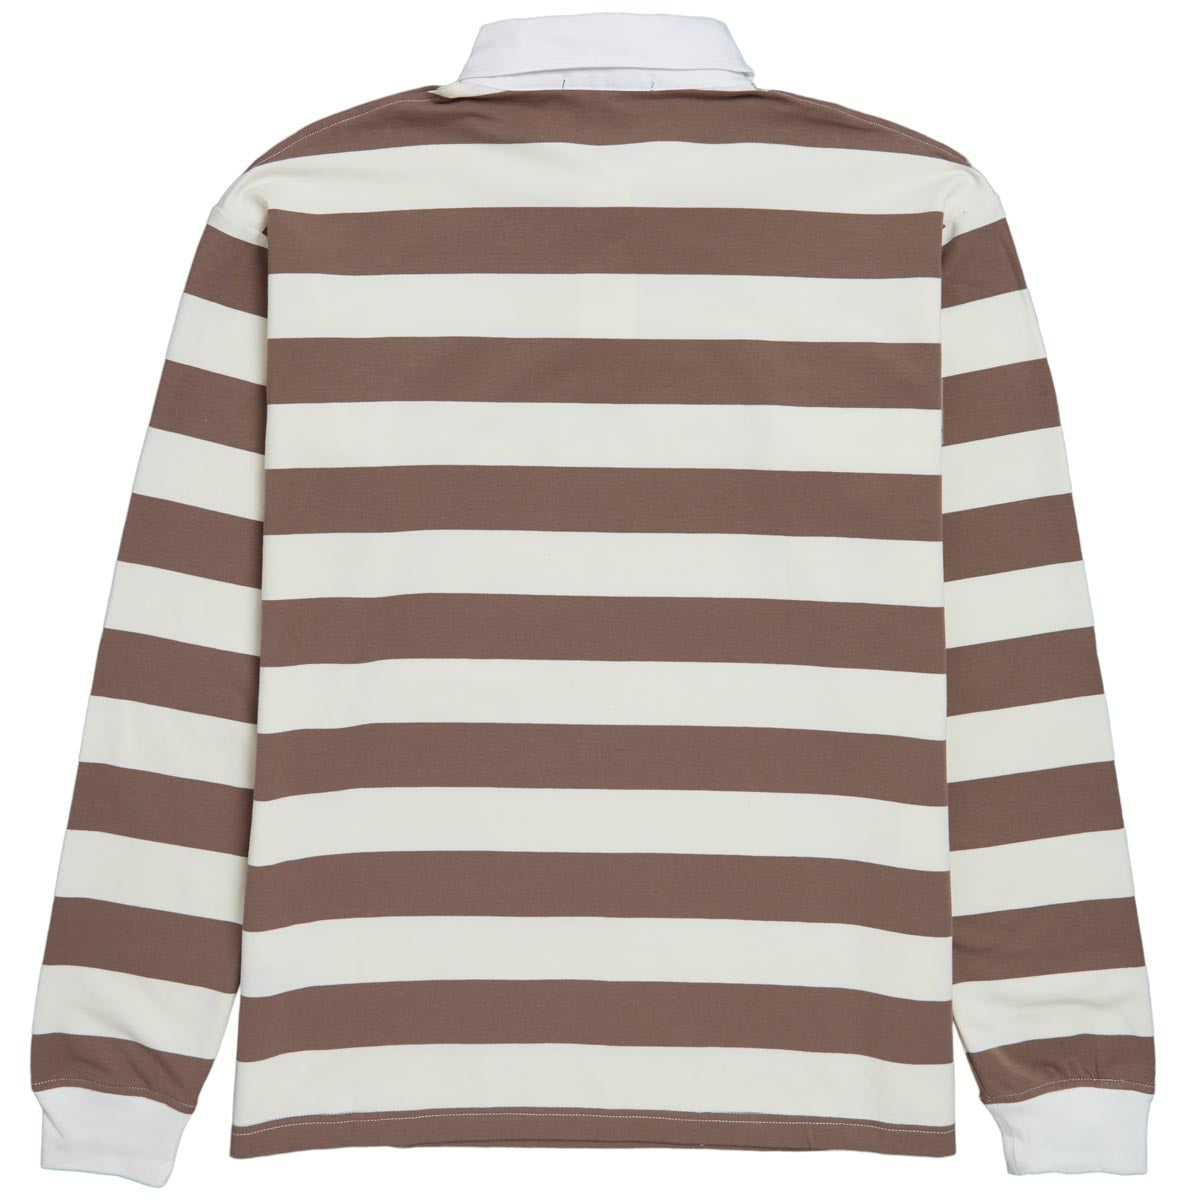 Independent OG Speed Long Sleeve Rugby Shirt - Natural Stripe image 2